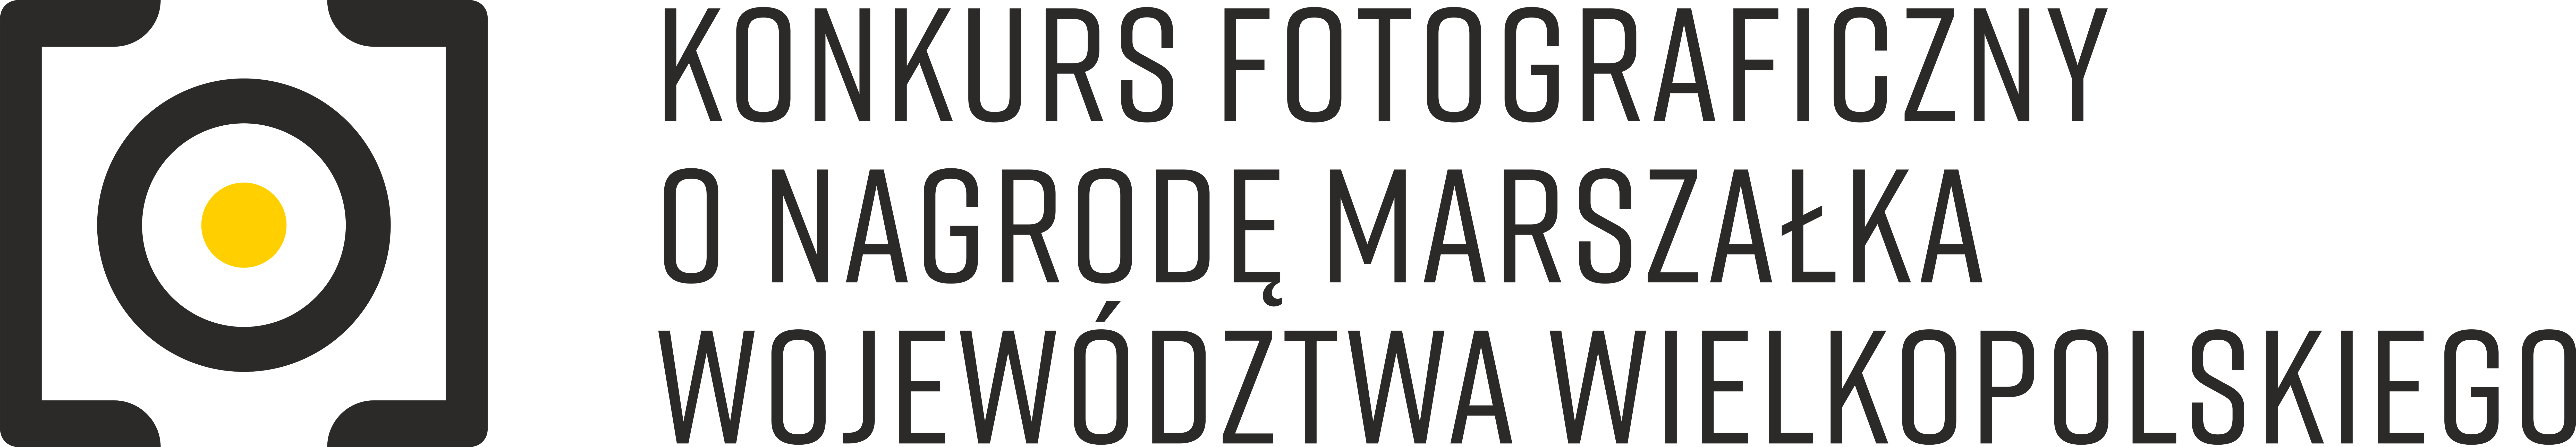 Zdjęcie przedstawia logo konkursowe Konkursu Fotograficznego o nagrodę Marszałka Województwa Wielkopolskiego.